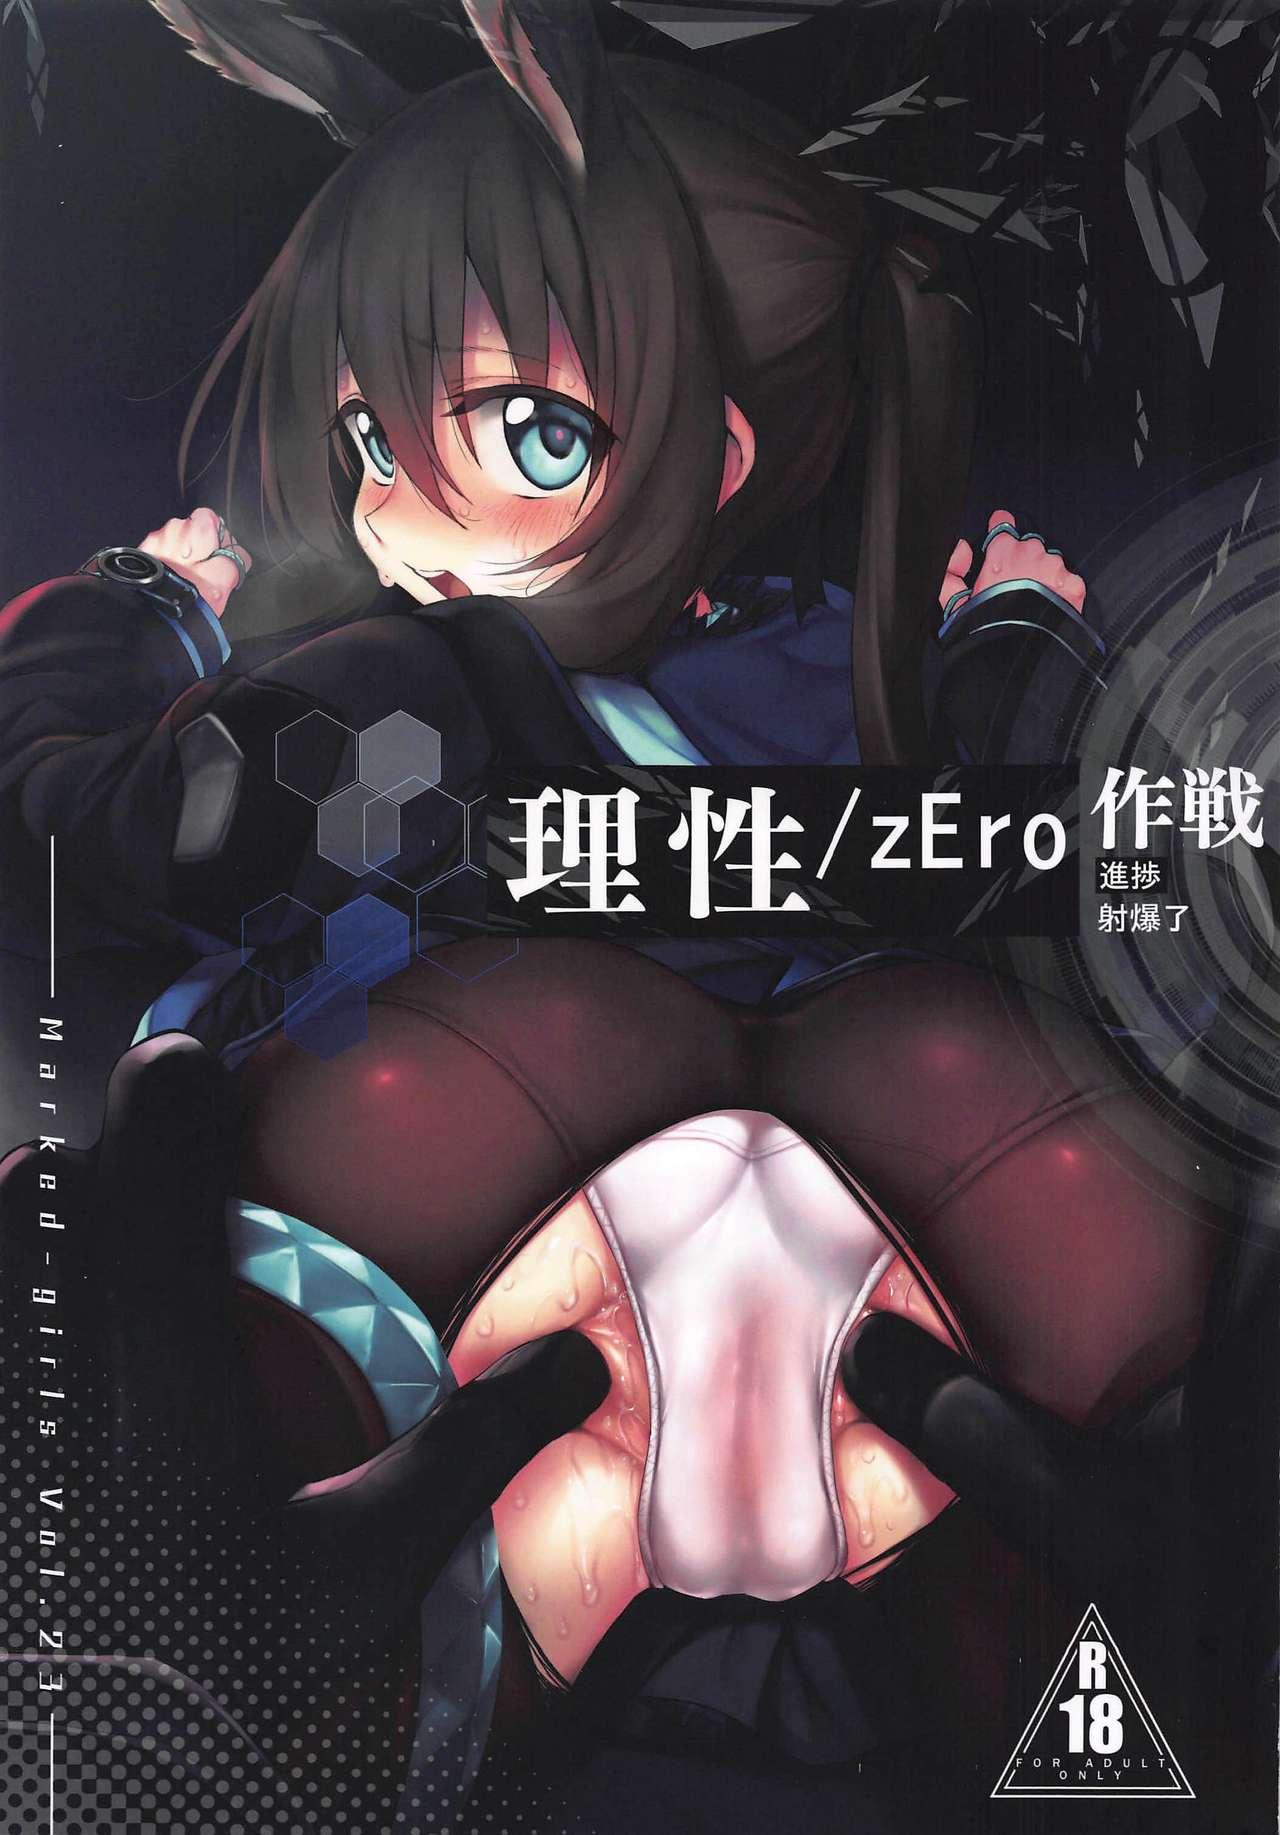 Risei/zEro Marked girls Vol. 23 0